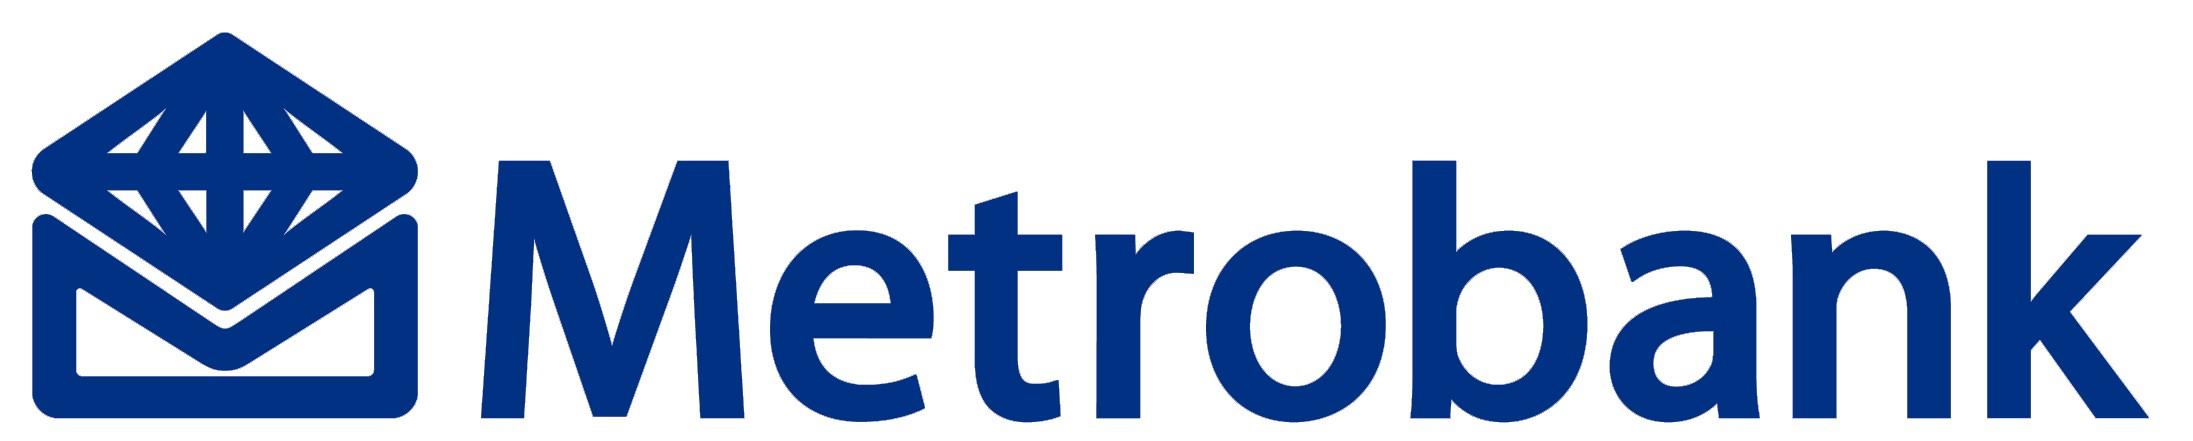 Metrobank Logo Download Vector